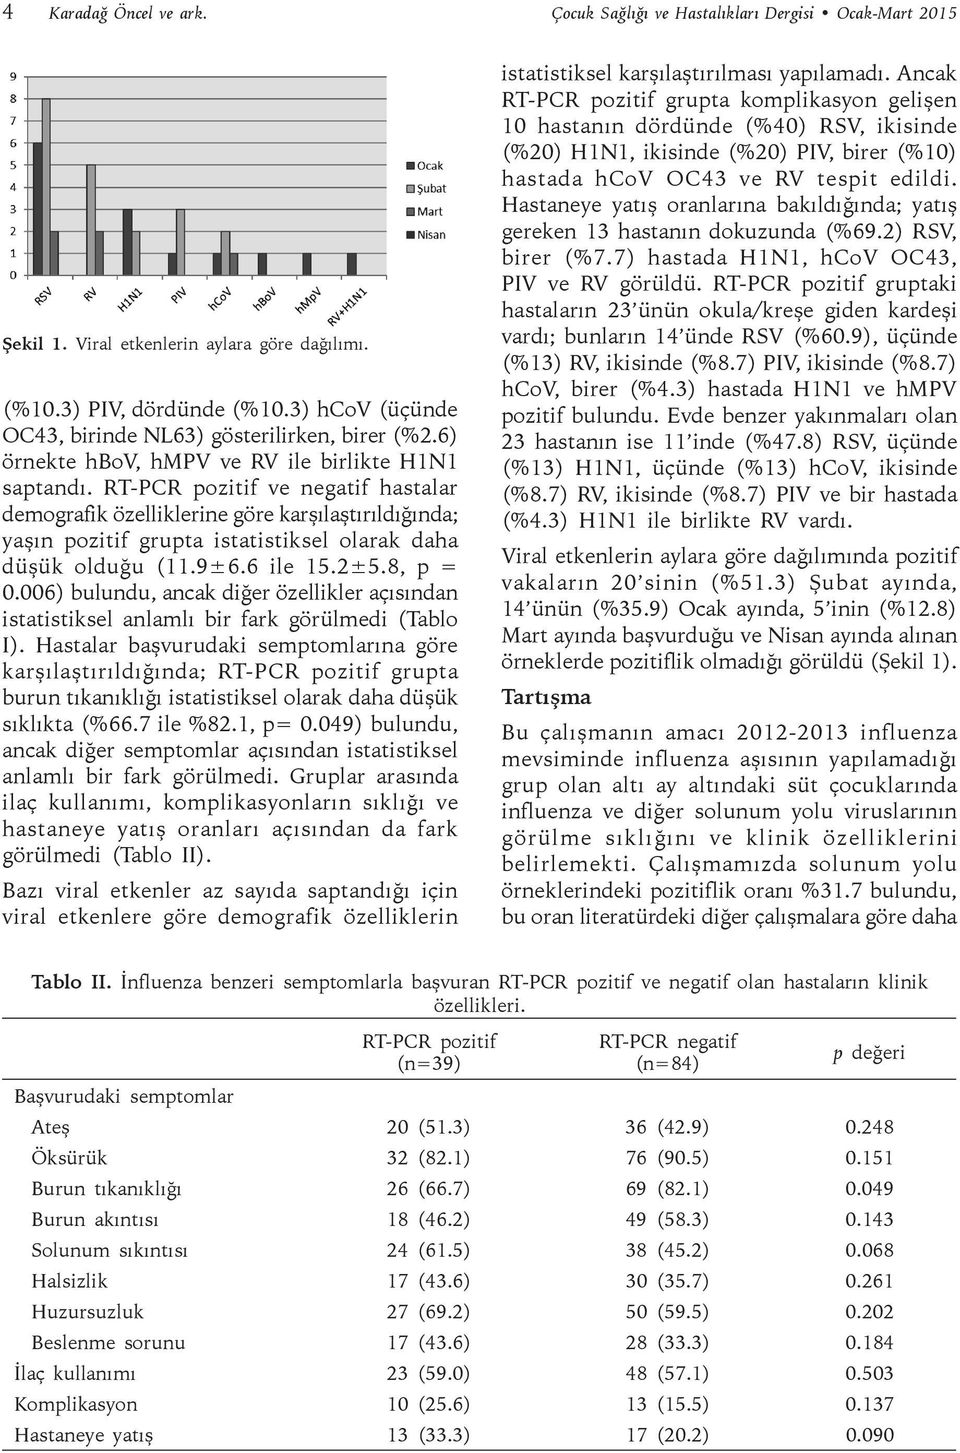 RT-PCR pozitif ve negatif hastalar demografik özelliklerine göre karşılaştırıldığında; yaşın pozitif grupta istatistiksel olarak daha düşük olduğu (11.9±6.6 ile 15.2±5.8, p = 0.